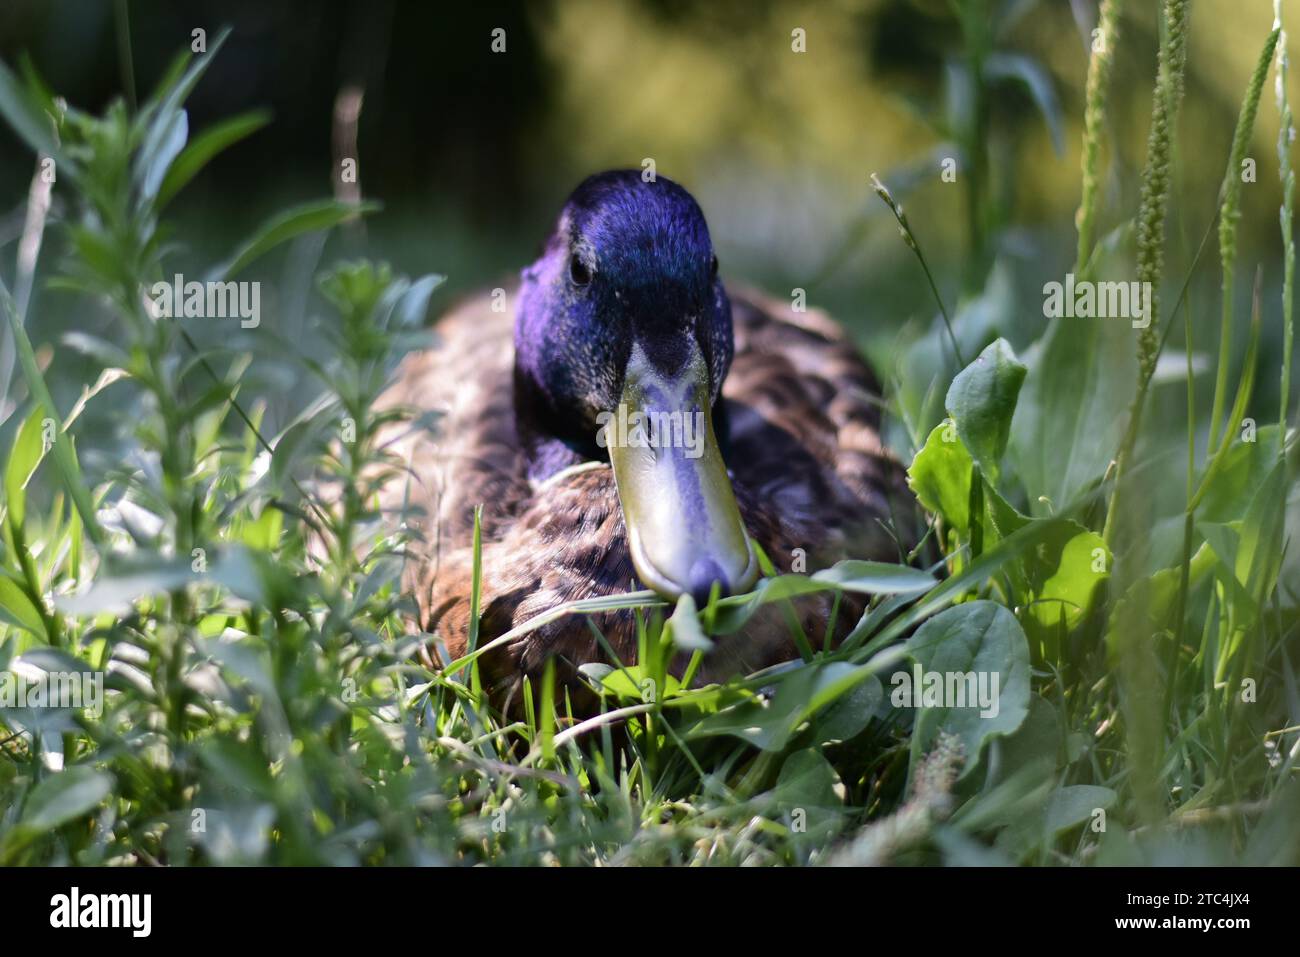 Wilde Ente genießt grünen Rasen in einem Stadtpark Stockfoto